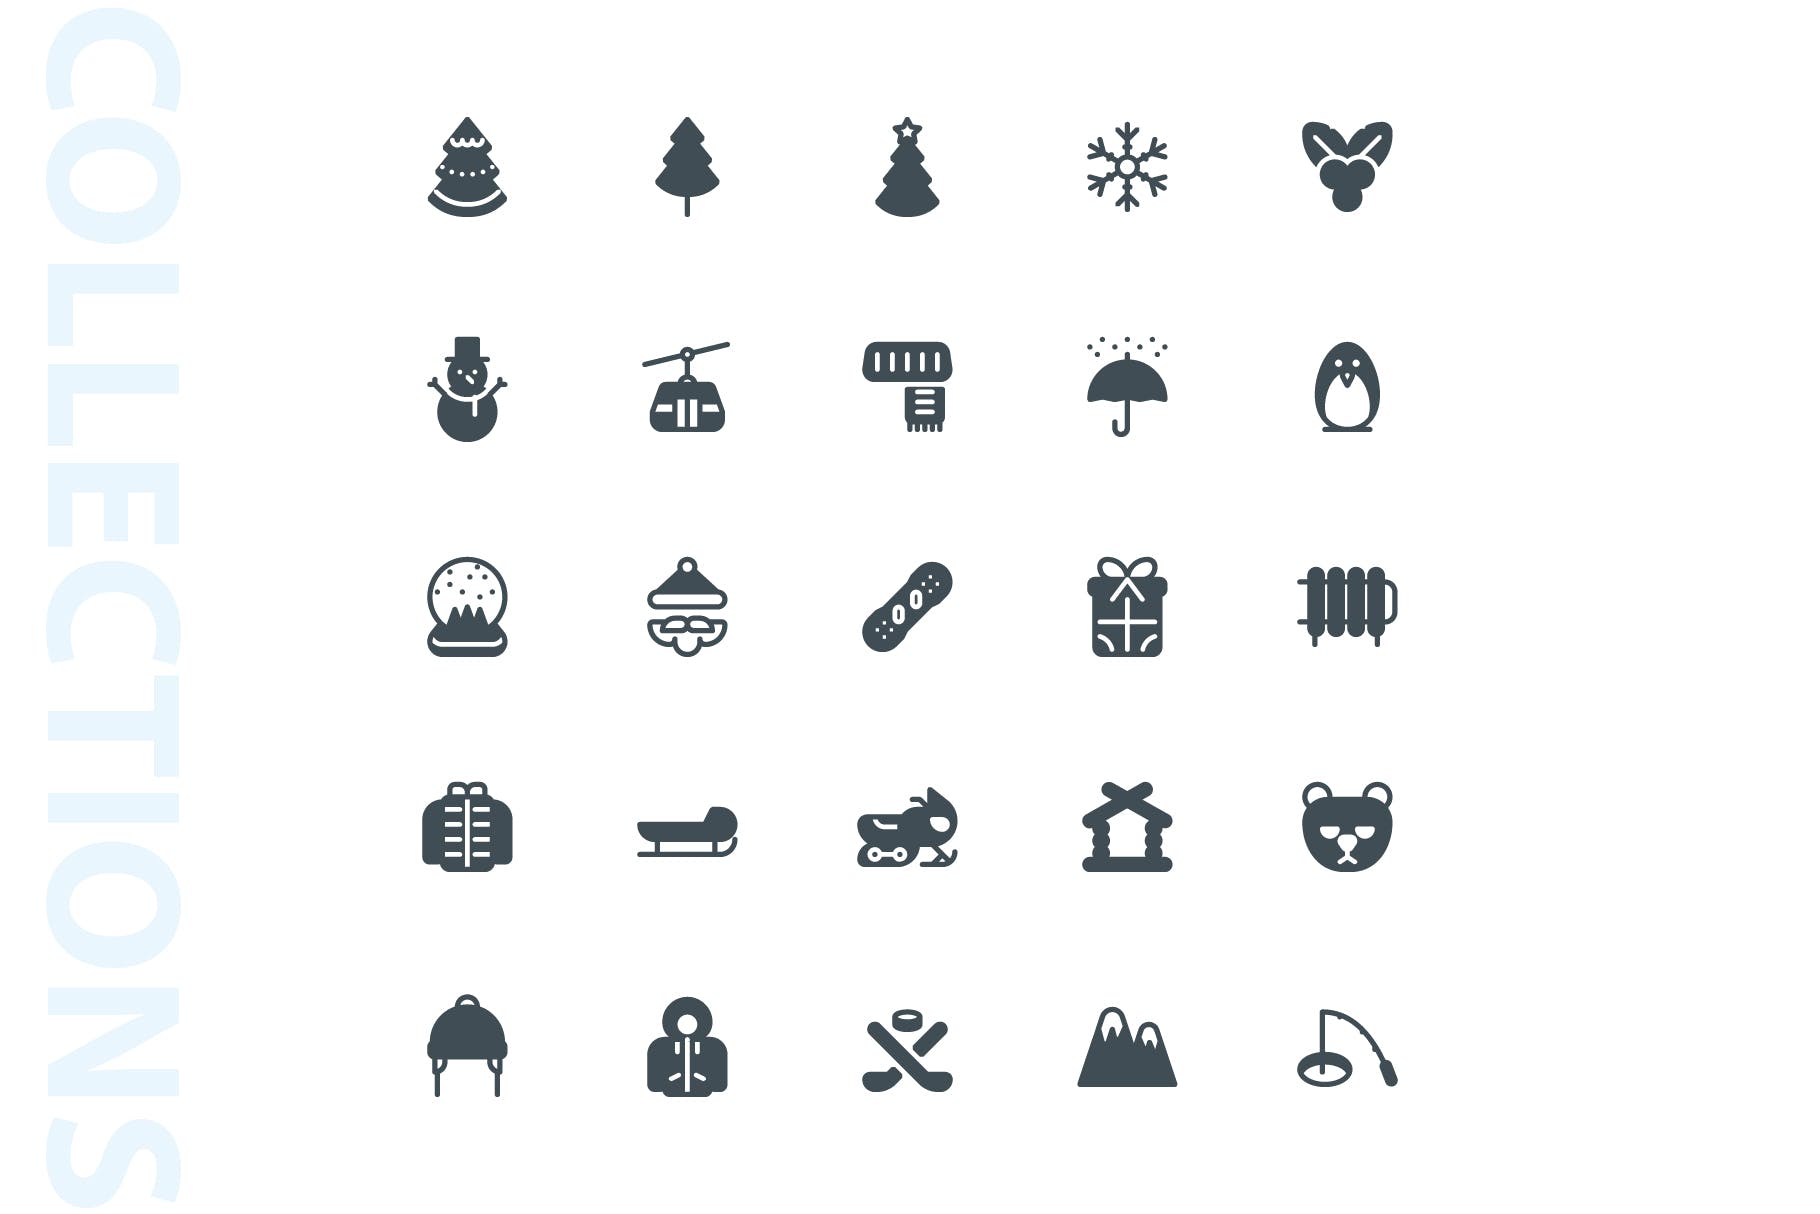 25枚冬天主题矢量字体蚂蚁素材精选图标v1 Winter Glyph Icons插图(3)